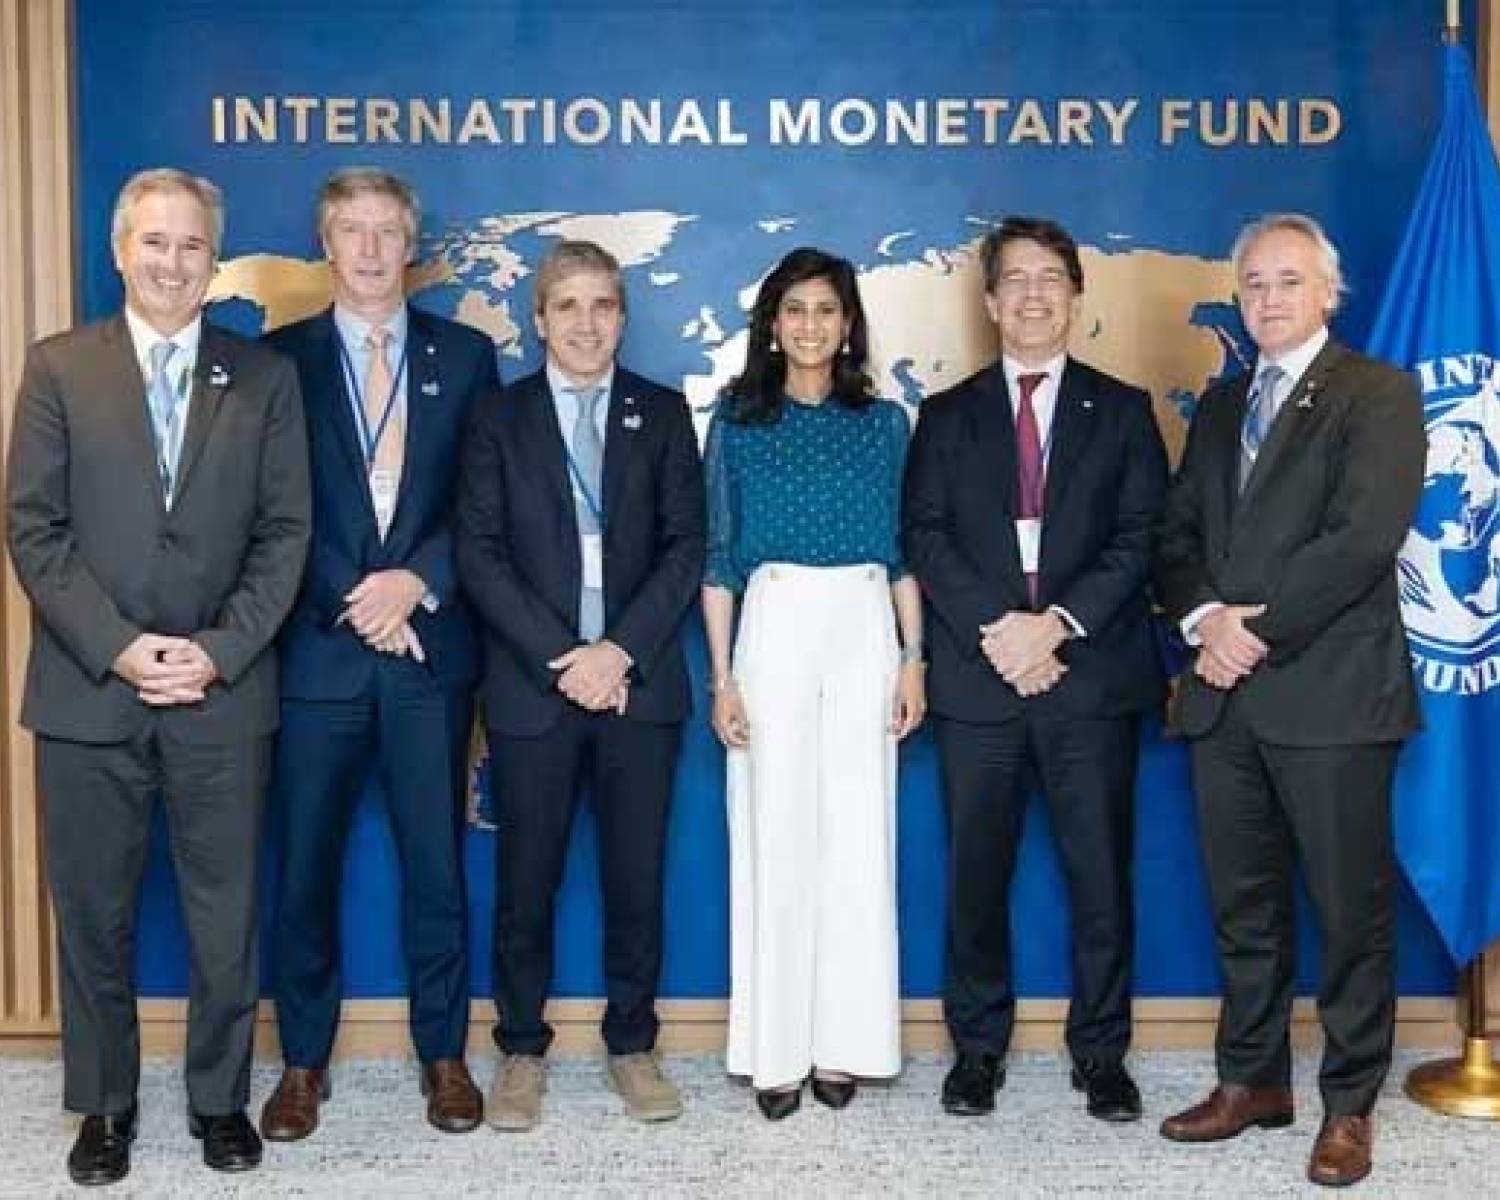 Luis Caputo con funcionarios del FMI: consiguió apoyo moral pero nada de plata